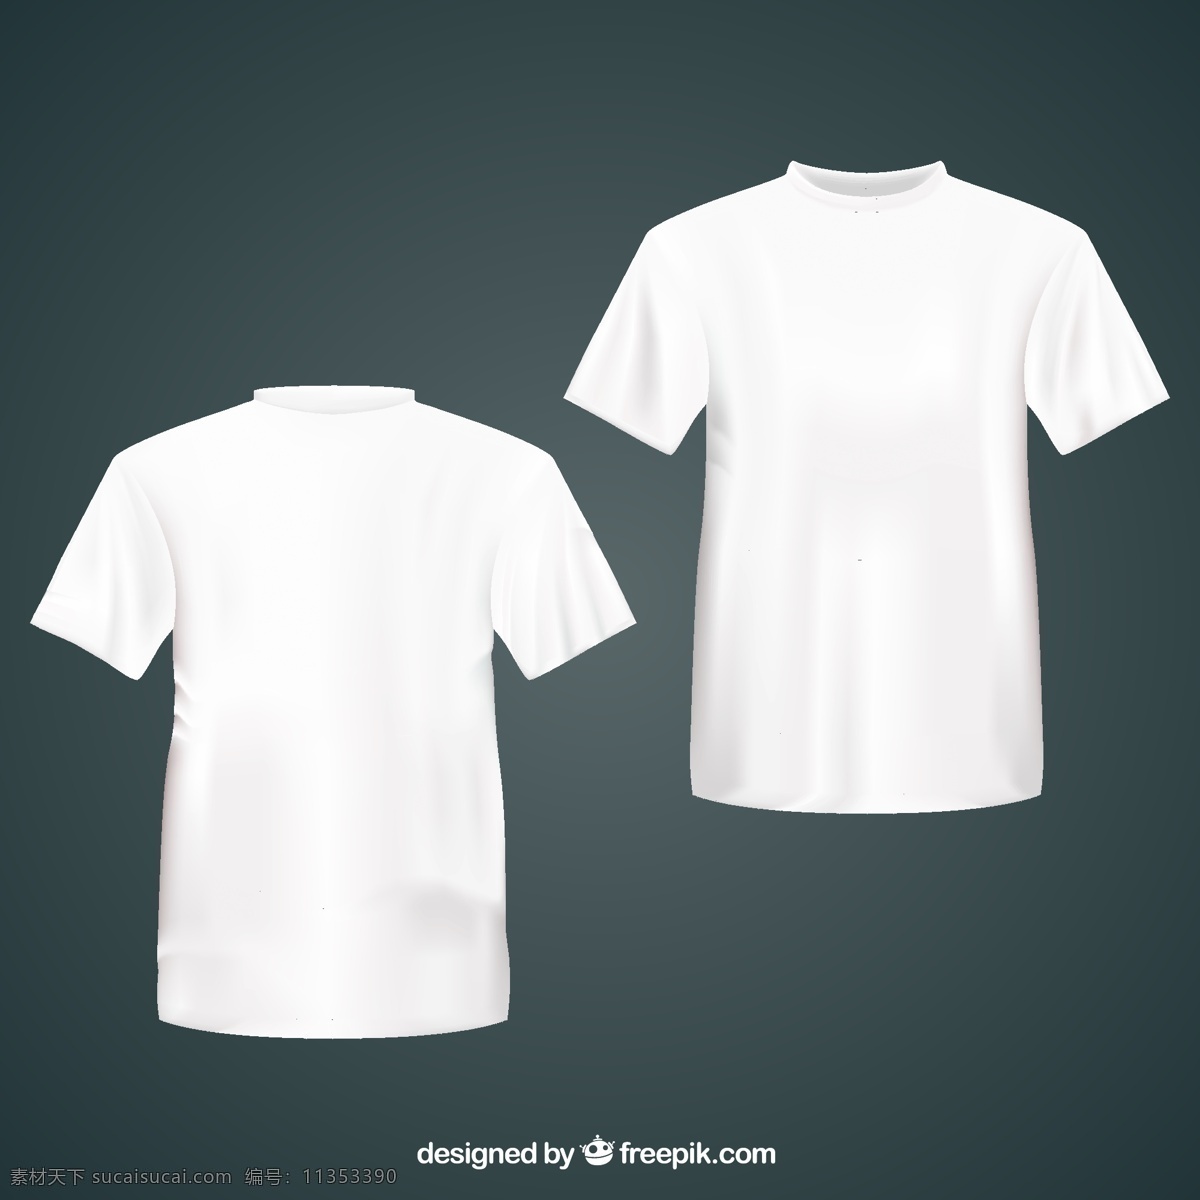 白色 t 恤 正反面 矢量 白色t恤正 反面矢量 t恤衫 短袖 夏 矢量图 ai格式